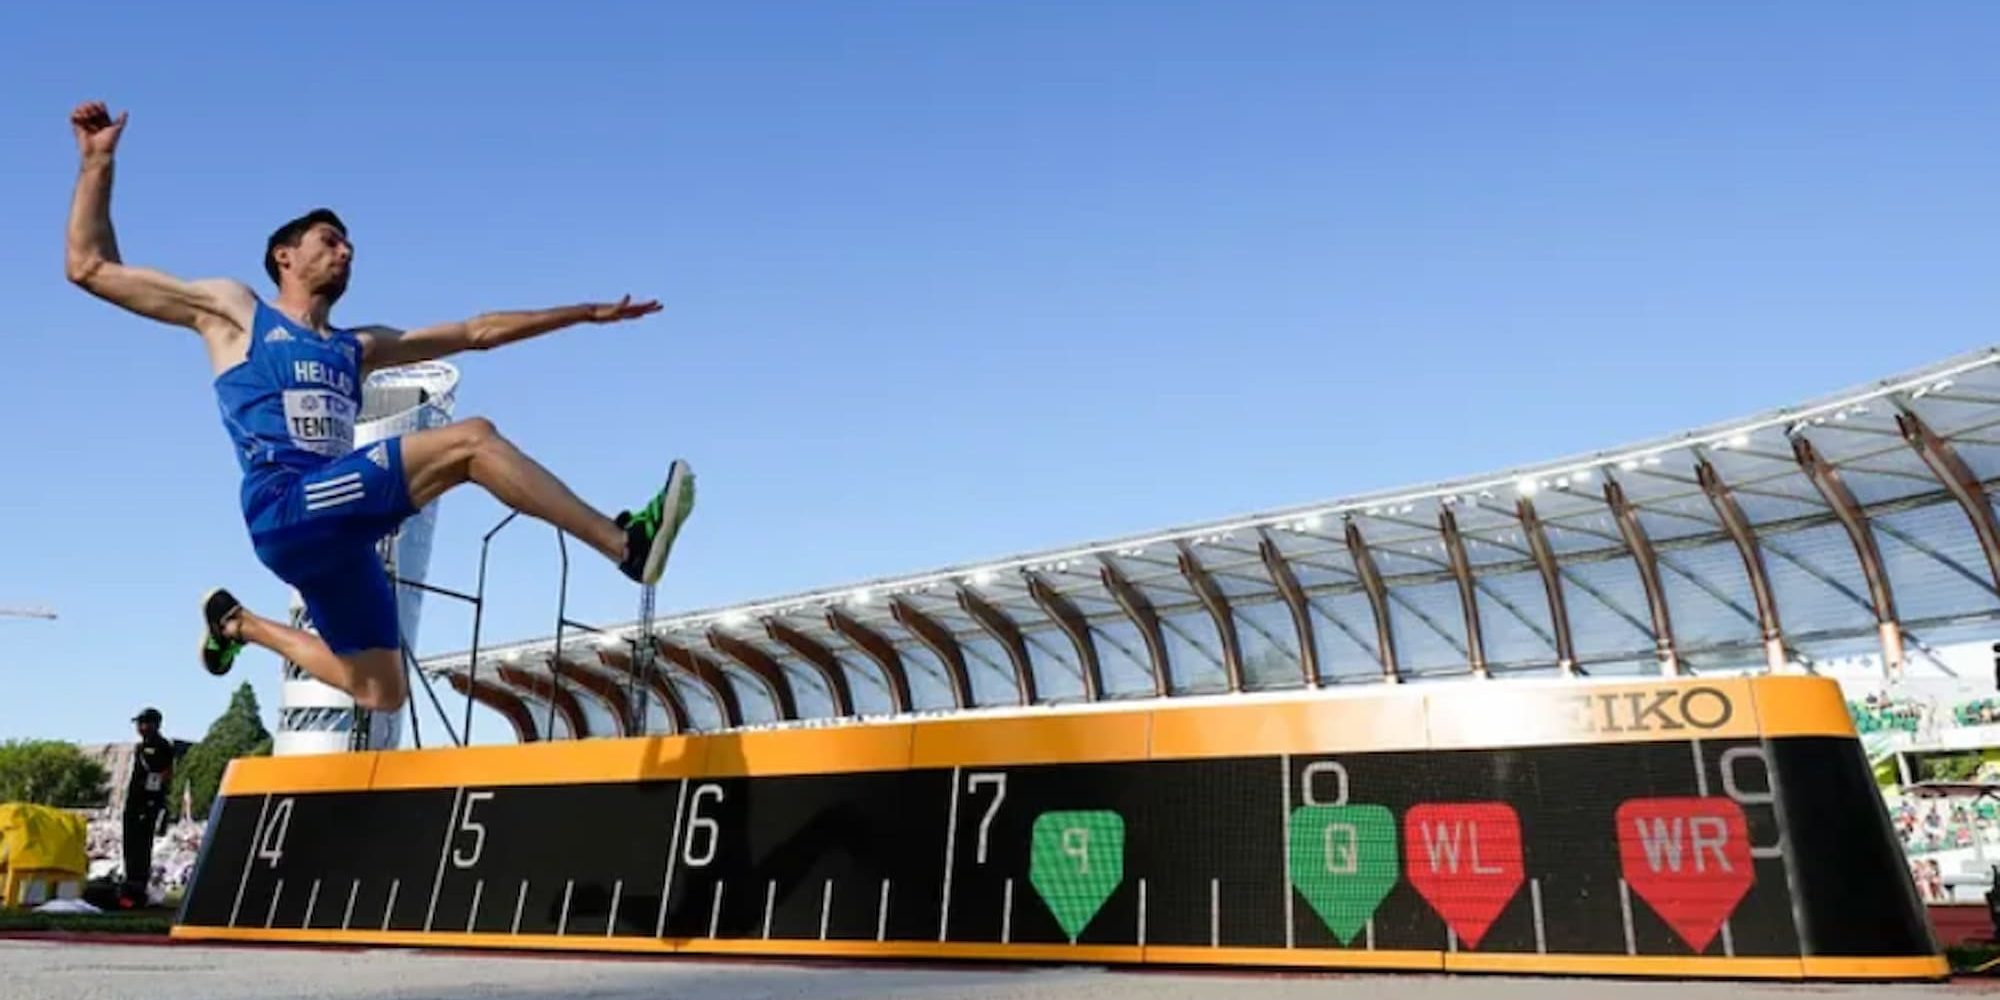 Ο Μίλτος Τεντόγλου διεκδικεί το χρυσό μετάλλιο στο Παγκόσμιο Πρωτάθλημα Στίβου